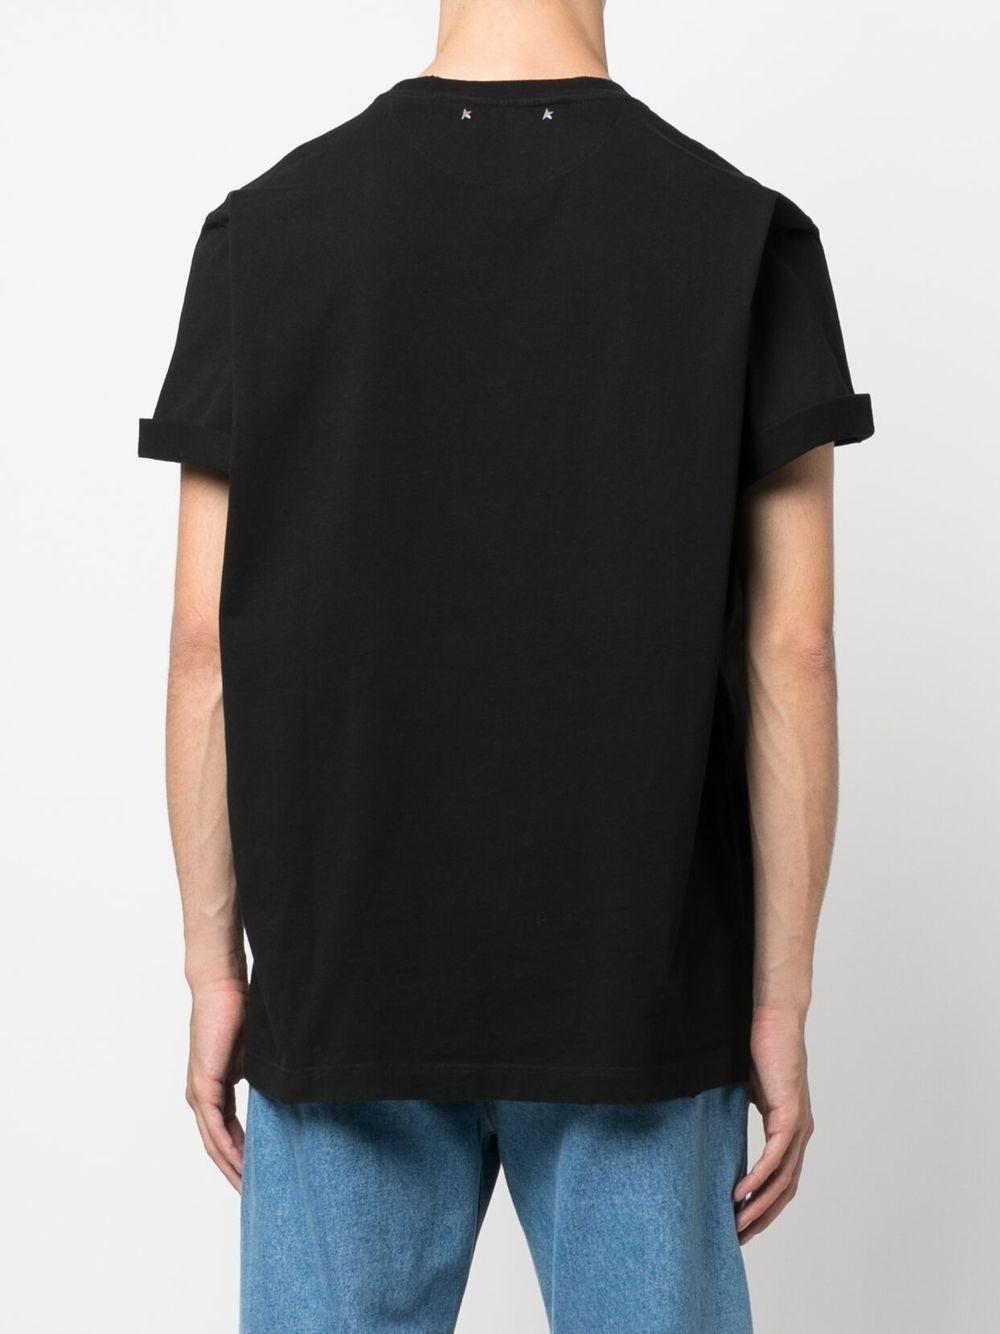 T-shirt noir basique